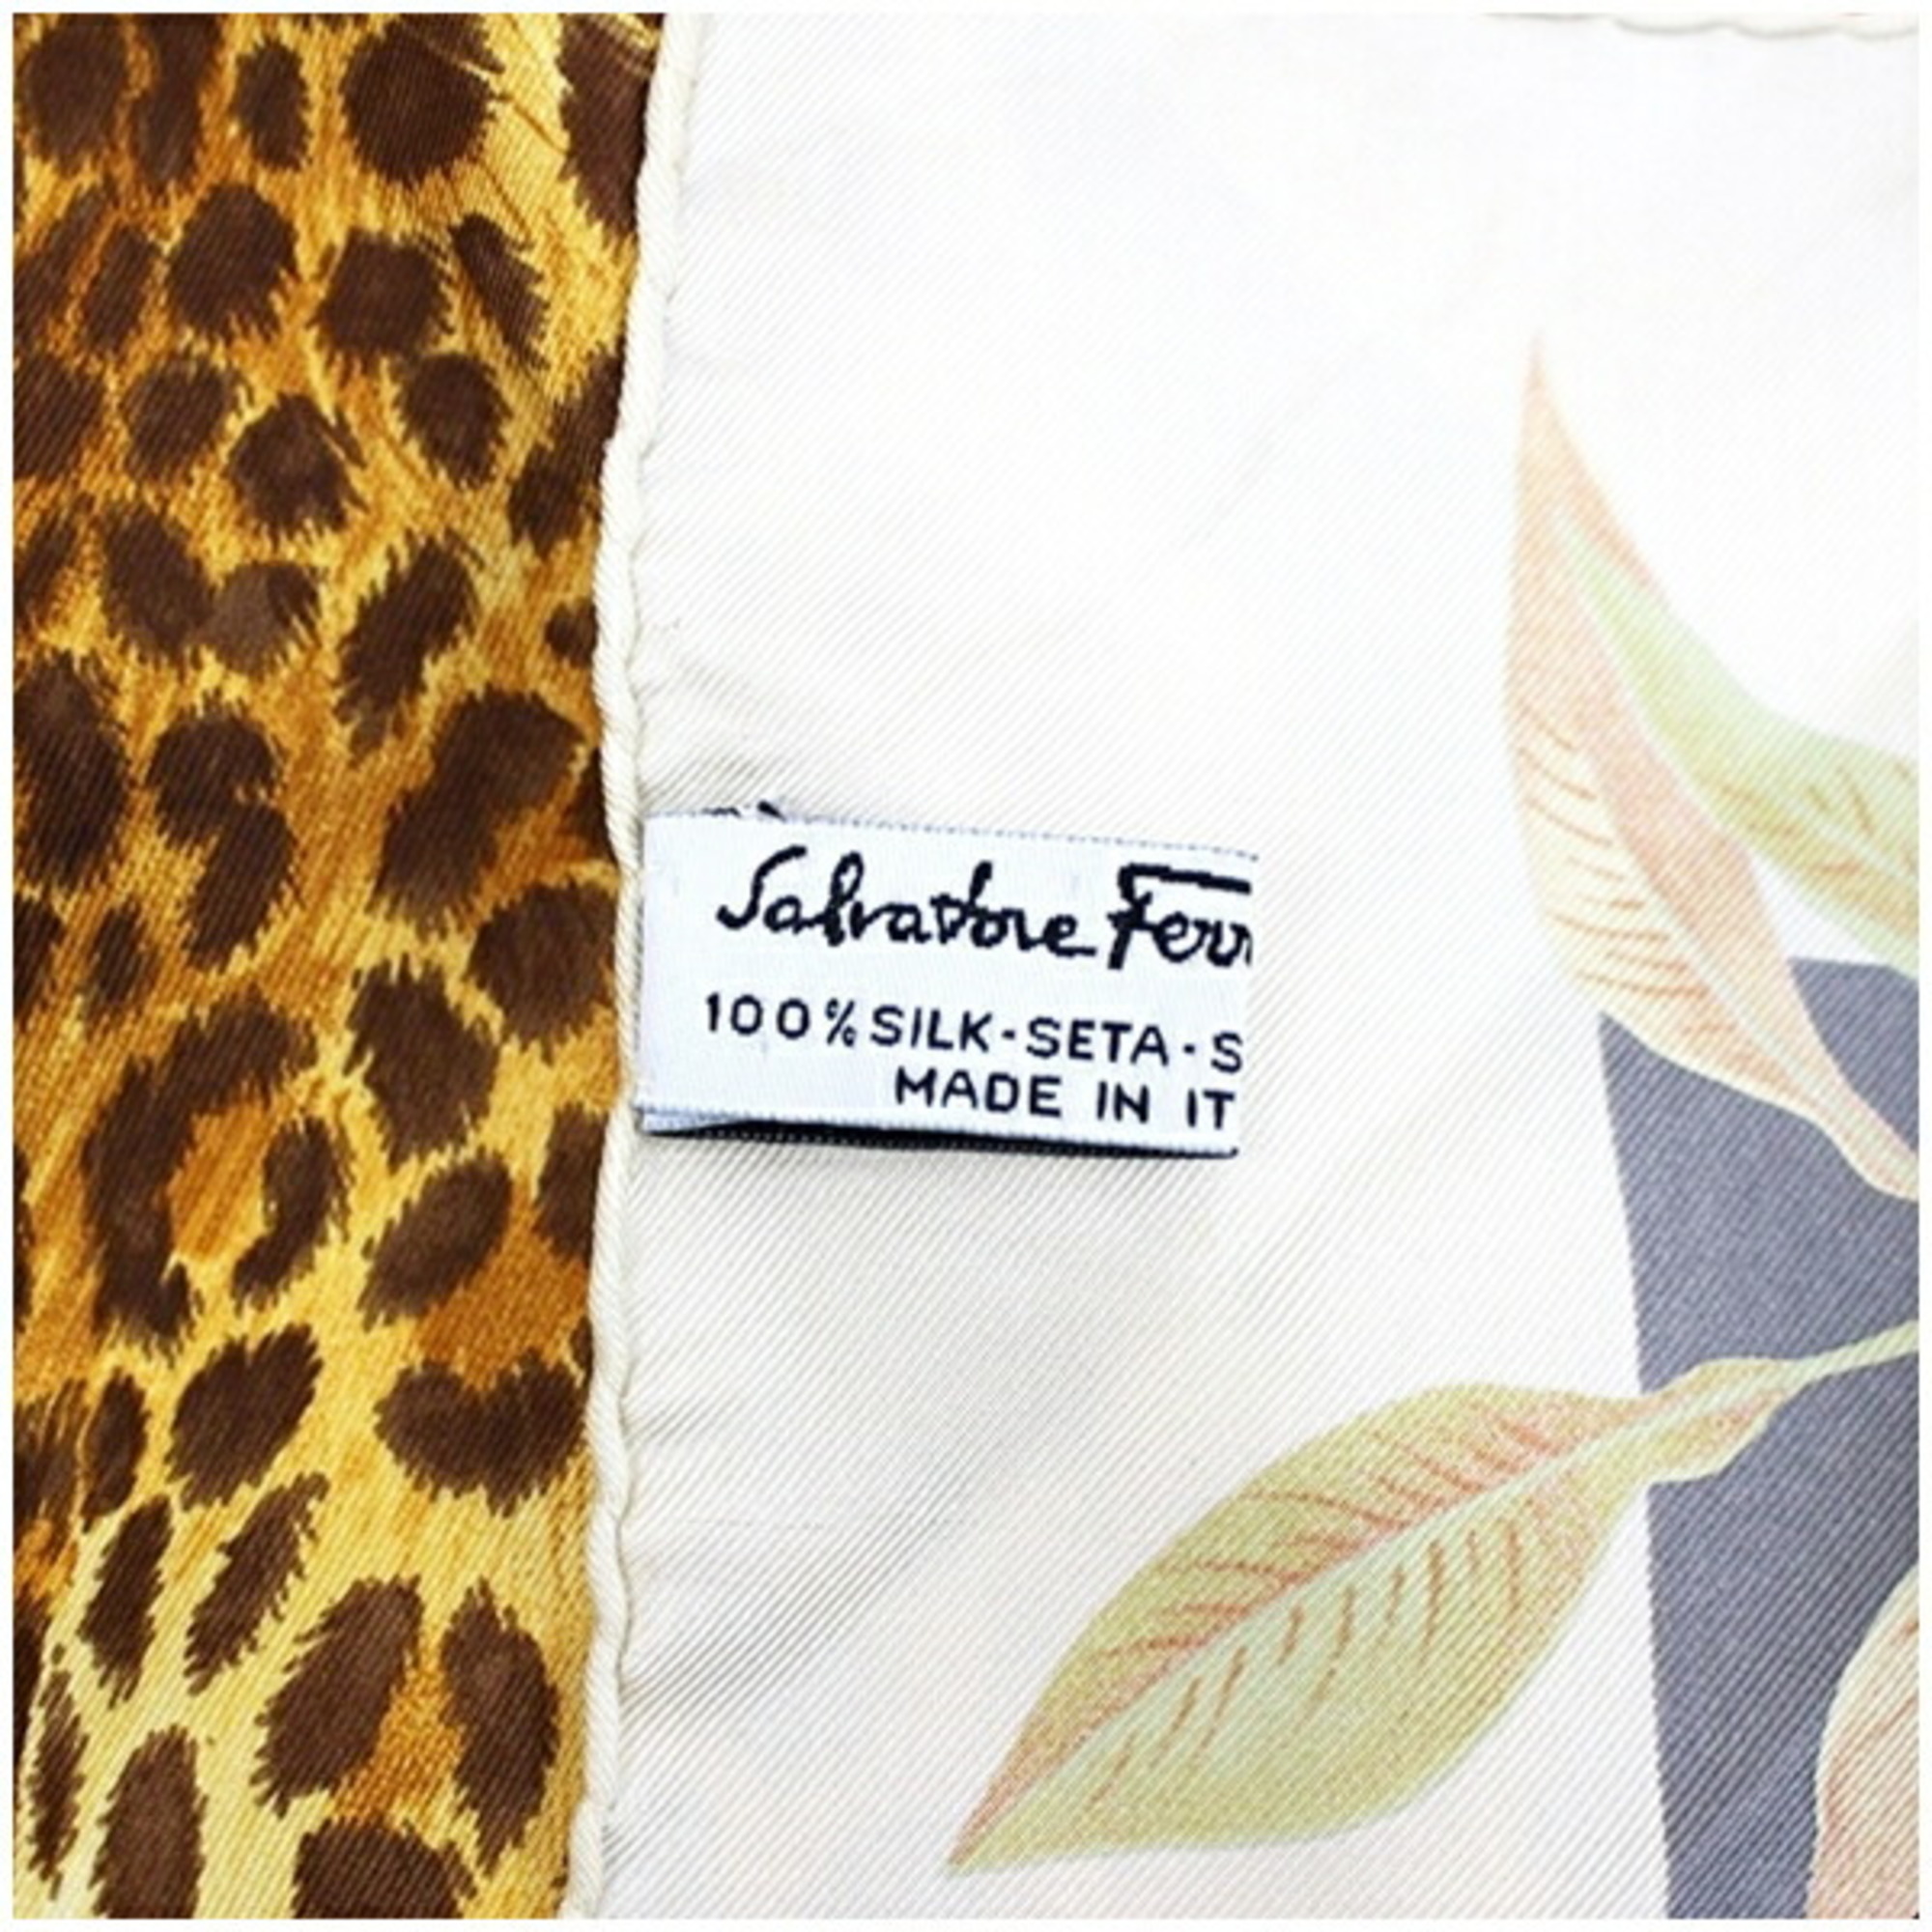 Salvatore Ferragamo Silk Scarf Muffler Cream x Multicolor Leopard Print Women's